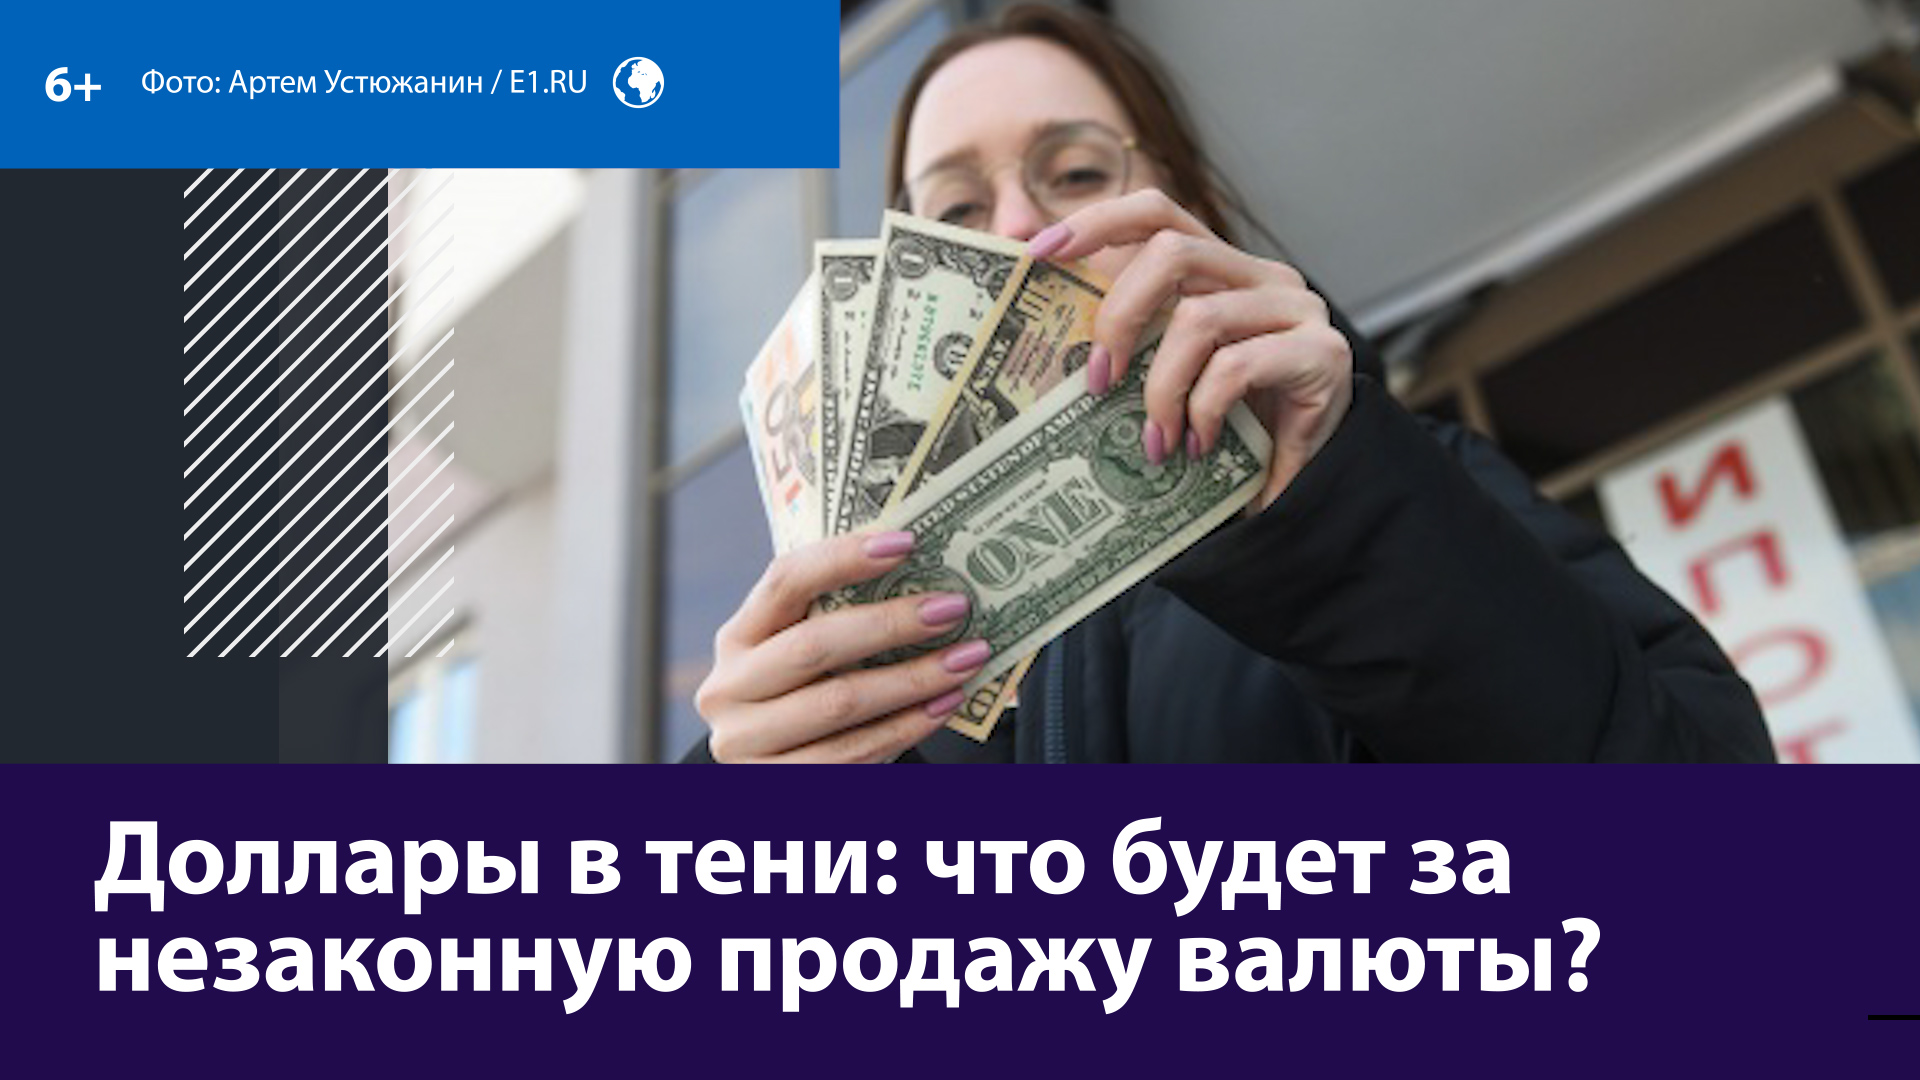 Что грозит спекулянтам за продажу валюты? — Москва FM